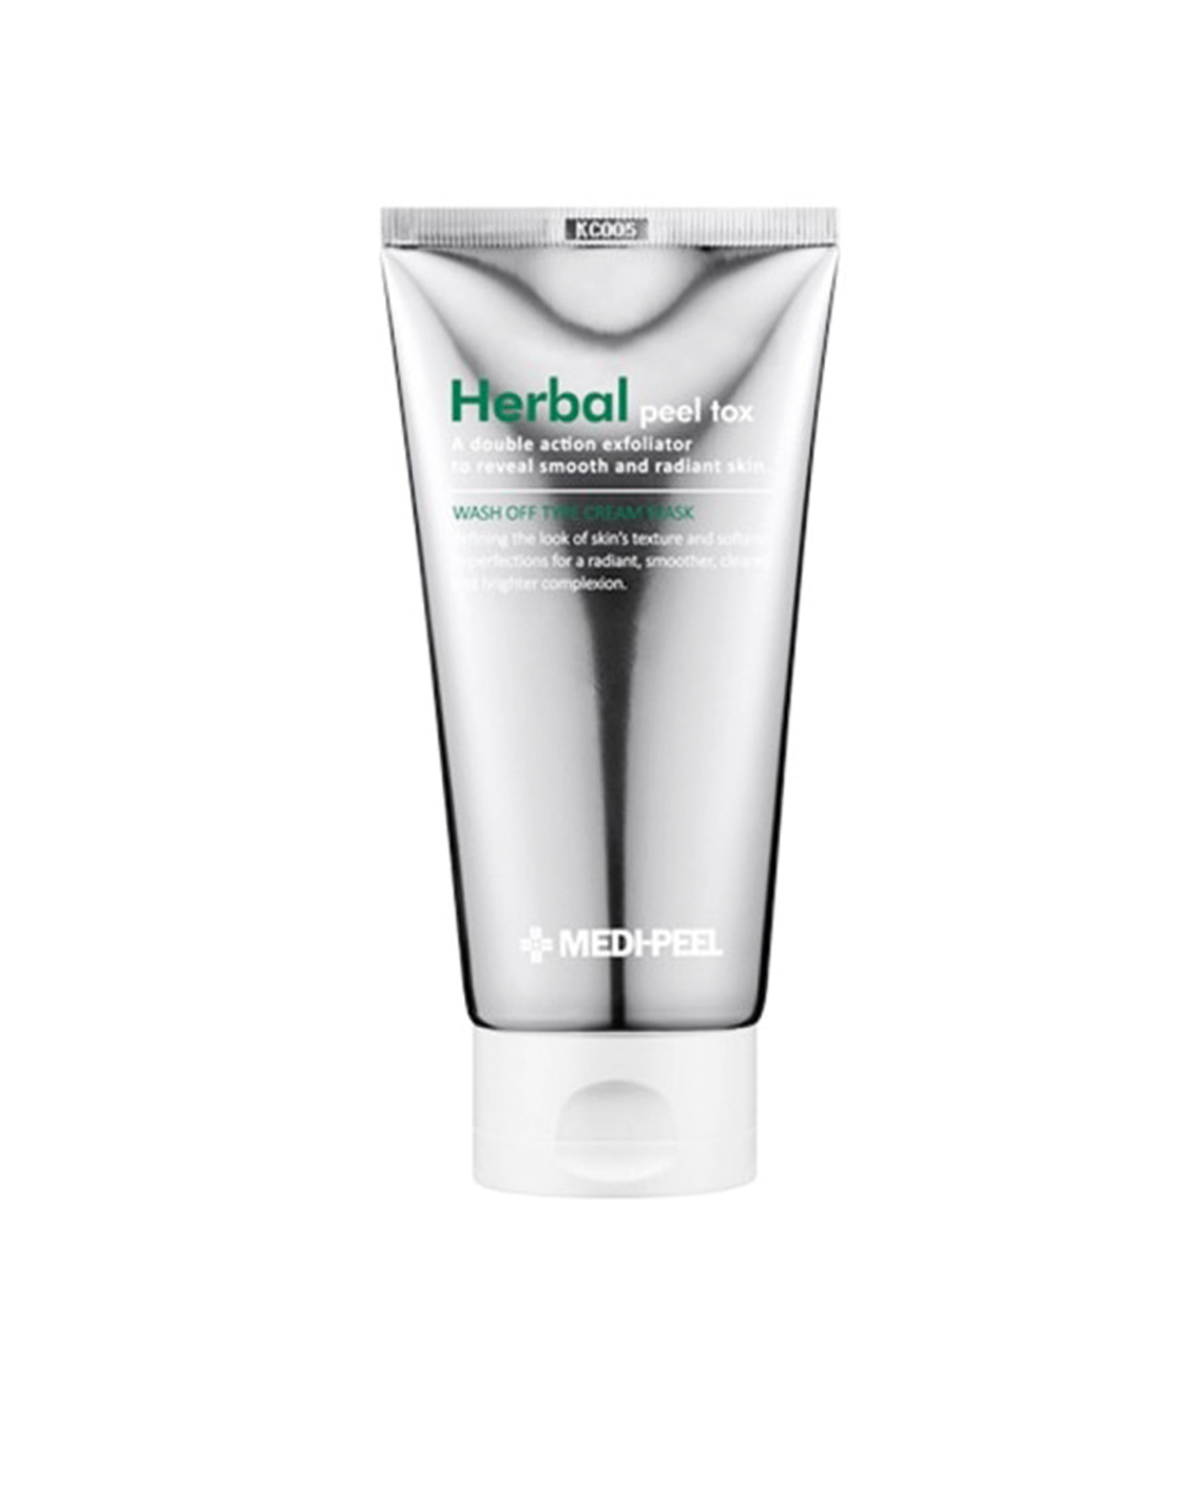 MEDI-PEEL Herbal Peel Tox Wash Off Type Cream Mask 120 g